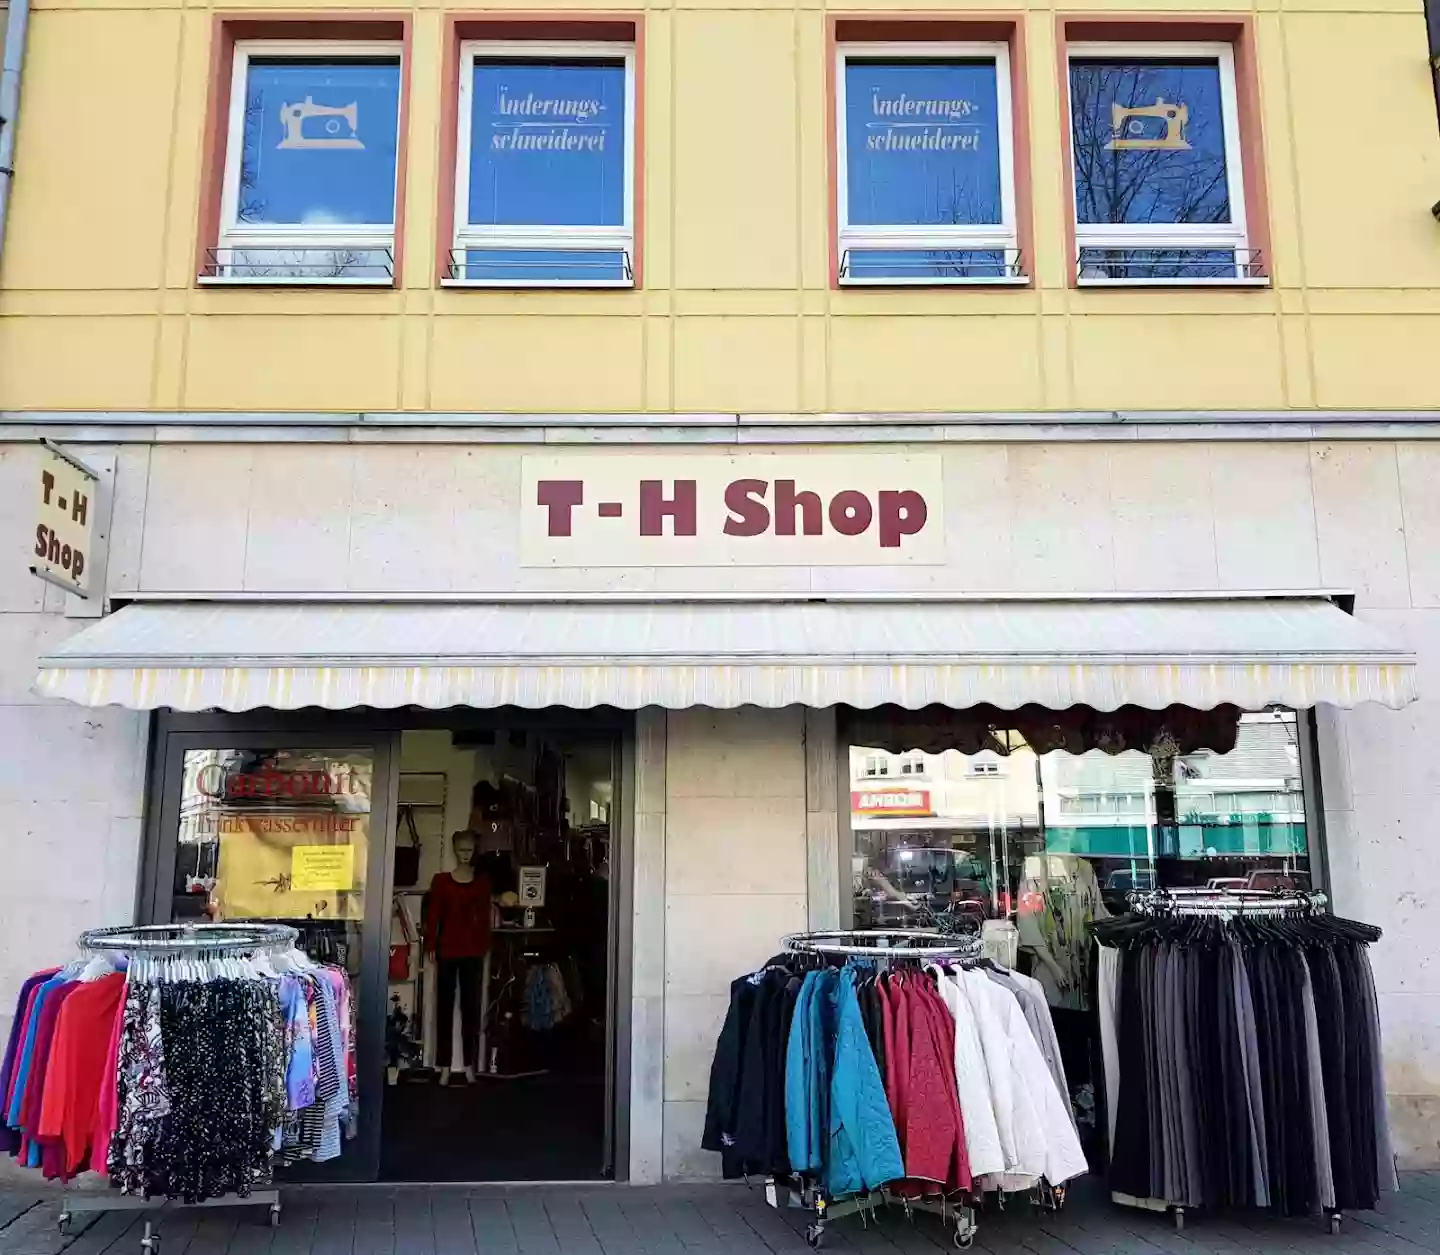 T-H Shop